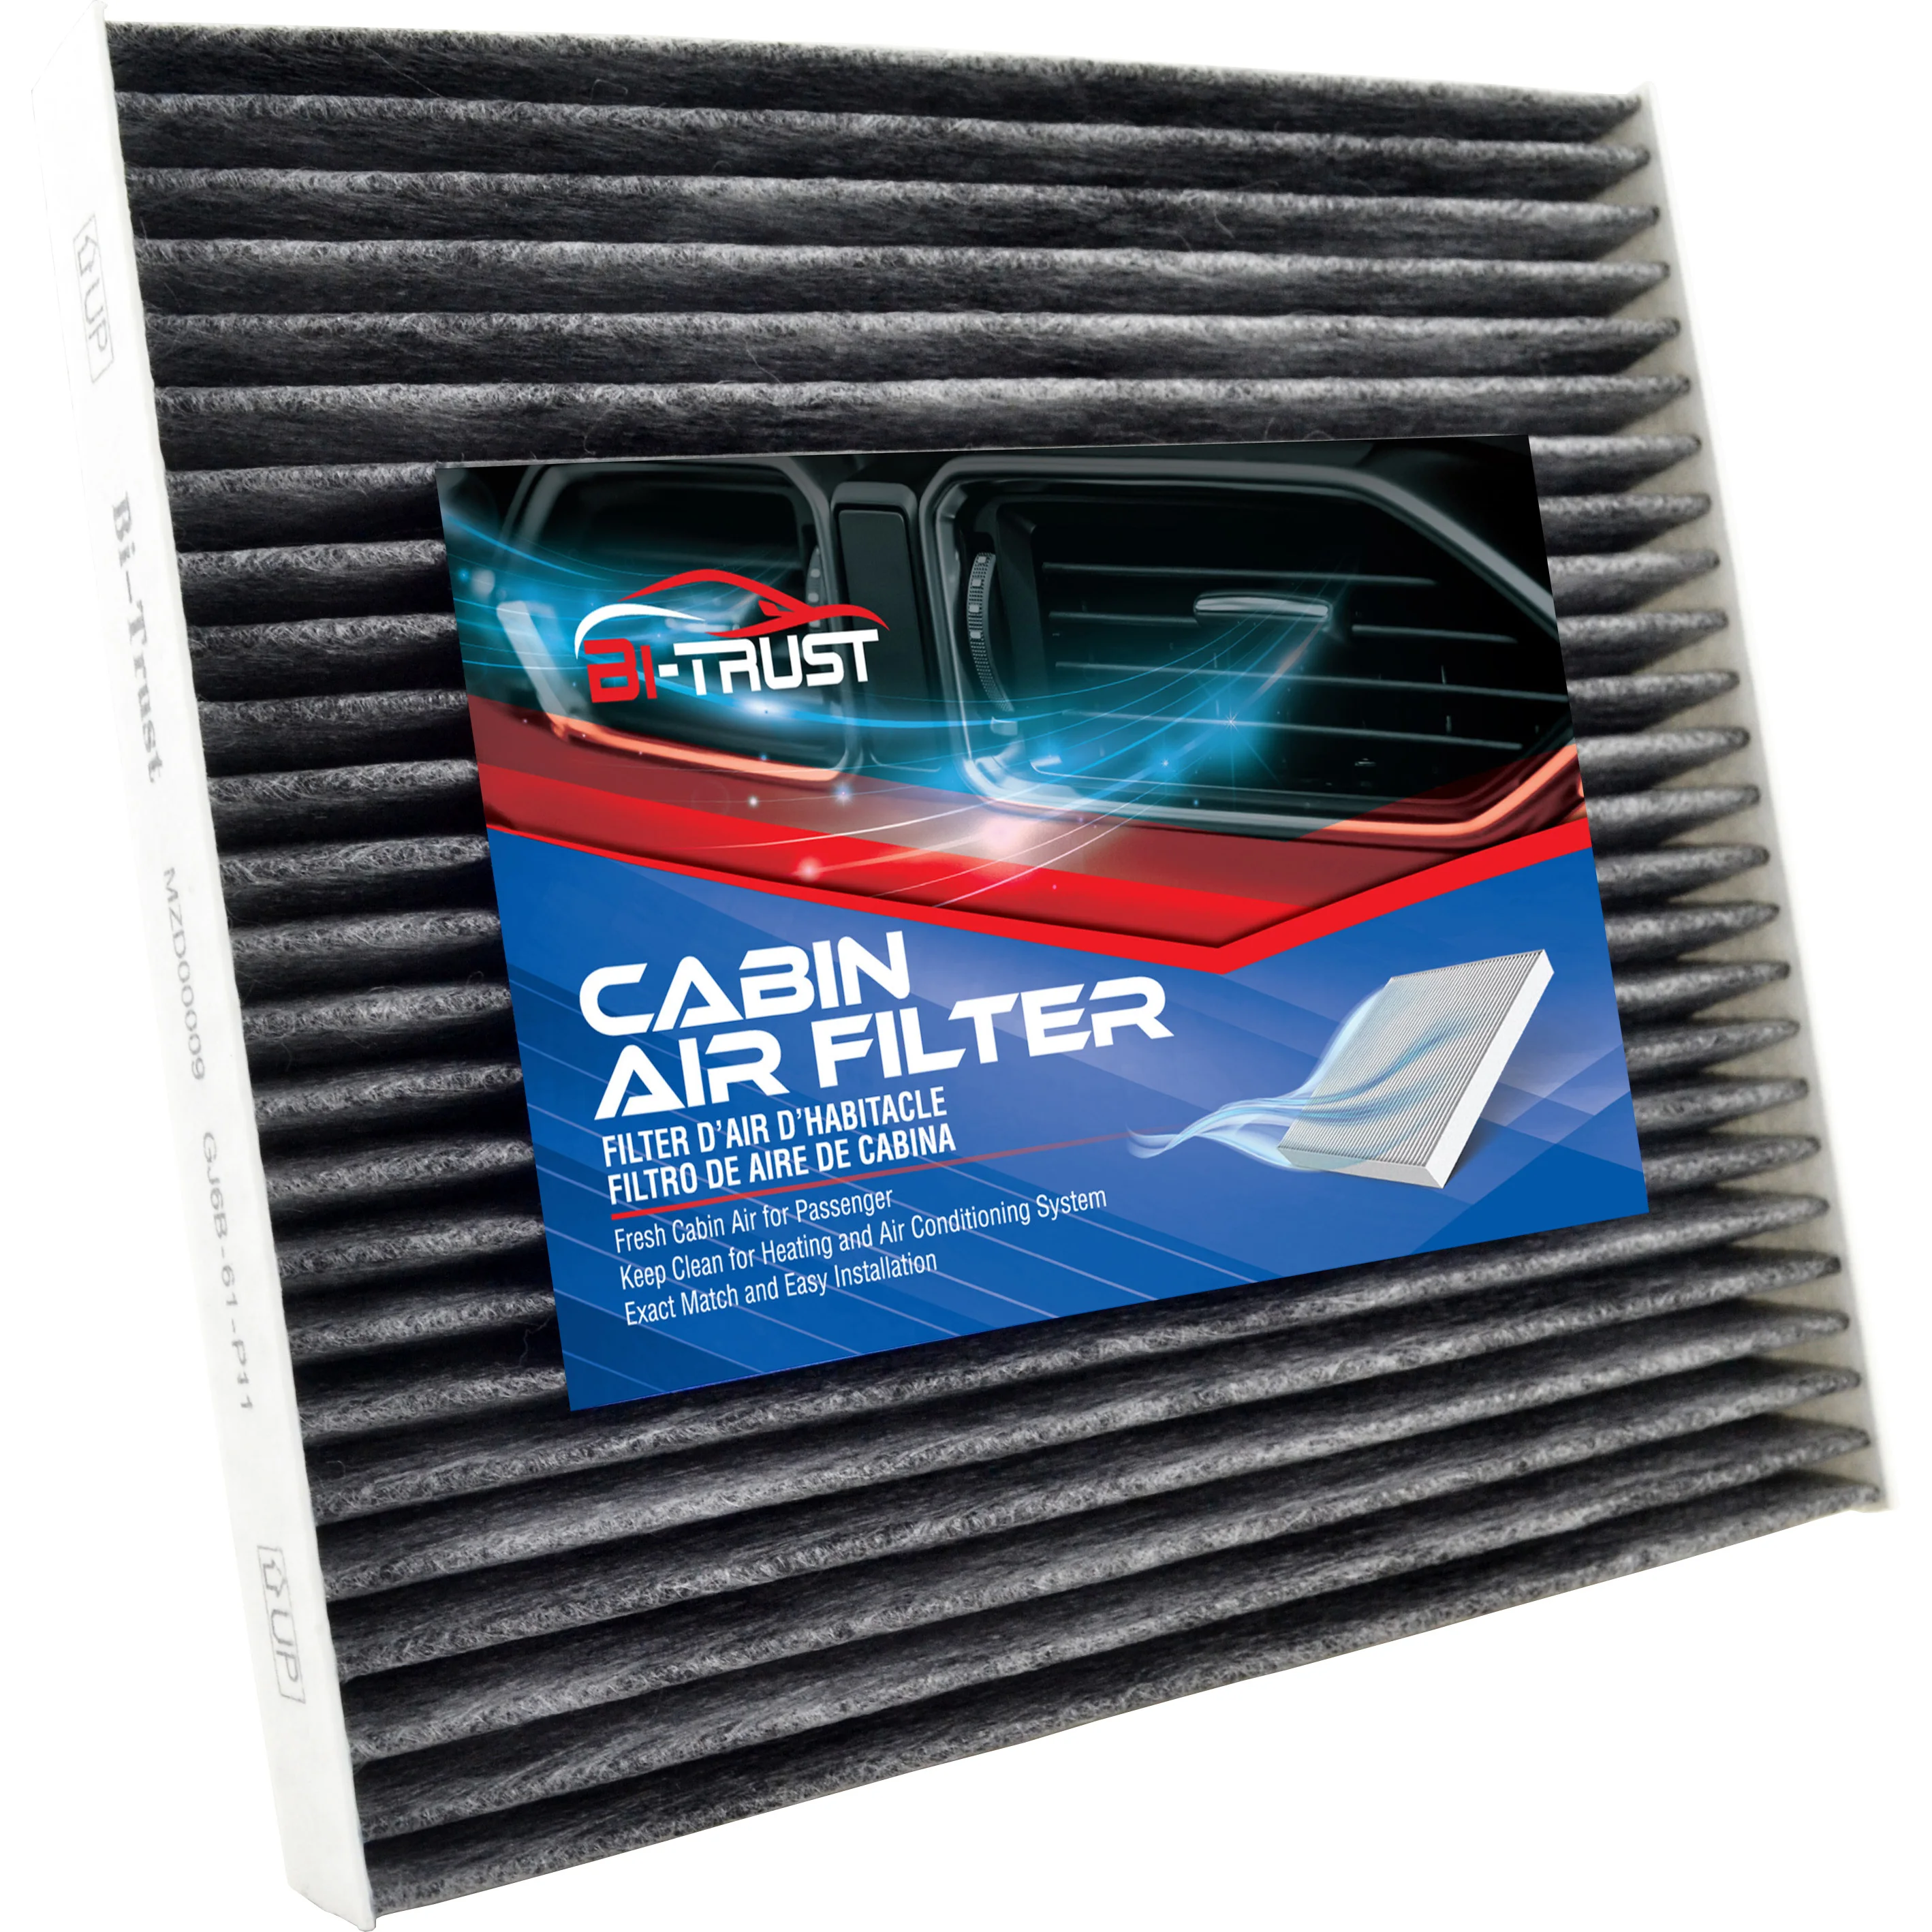 

Bi-Trust Cabin Air Filter for Mazda Cx-7 Ram 1500 2500 3500 4500 5500 CF11671 EG21-61-P11